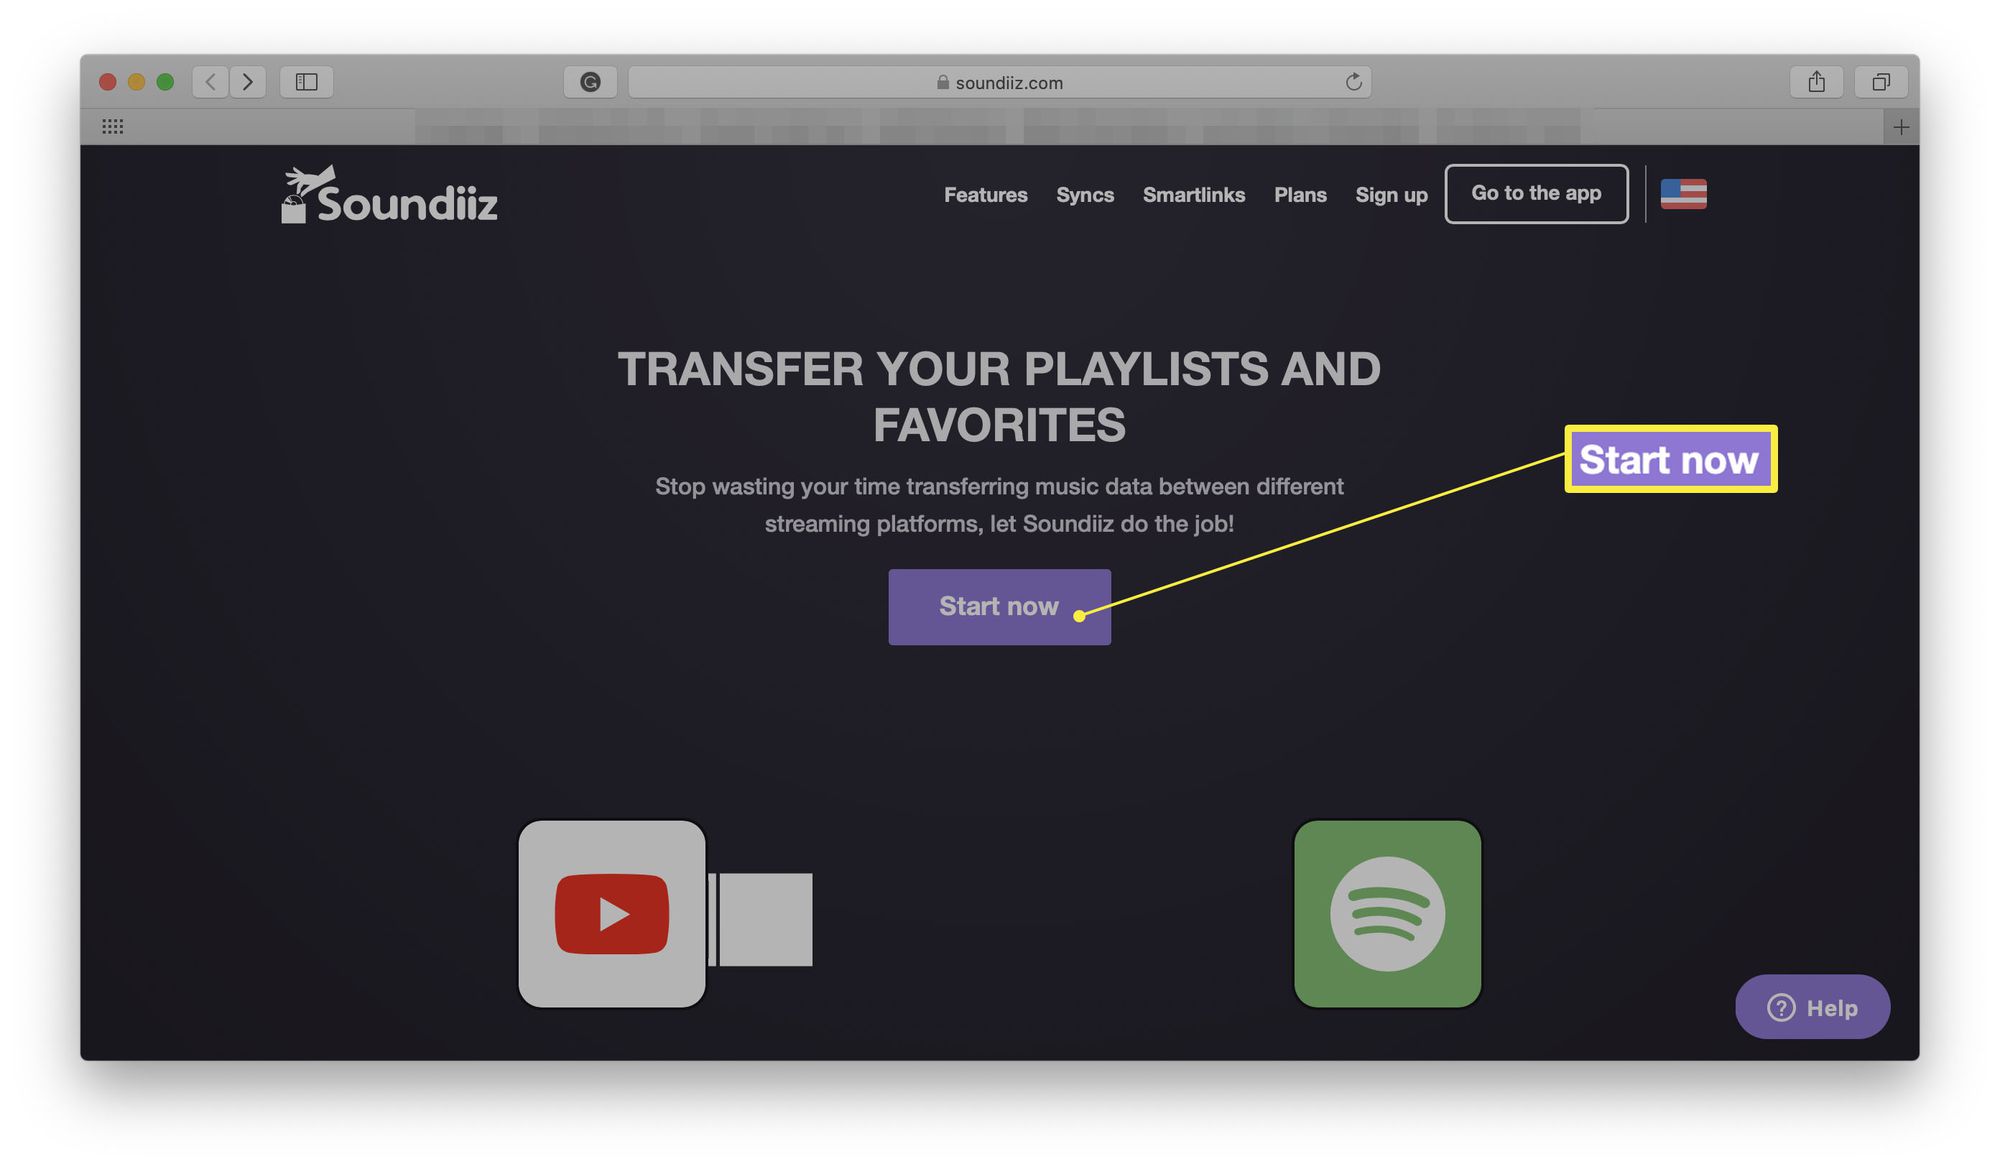 Soundiiz-verkkosivusto, jossa Launch Now on korostettuna